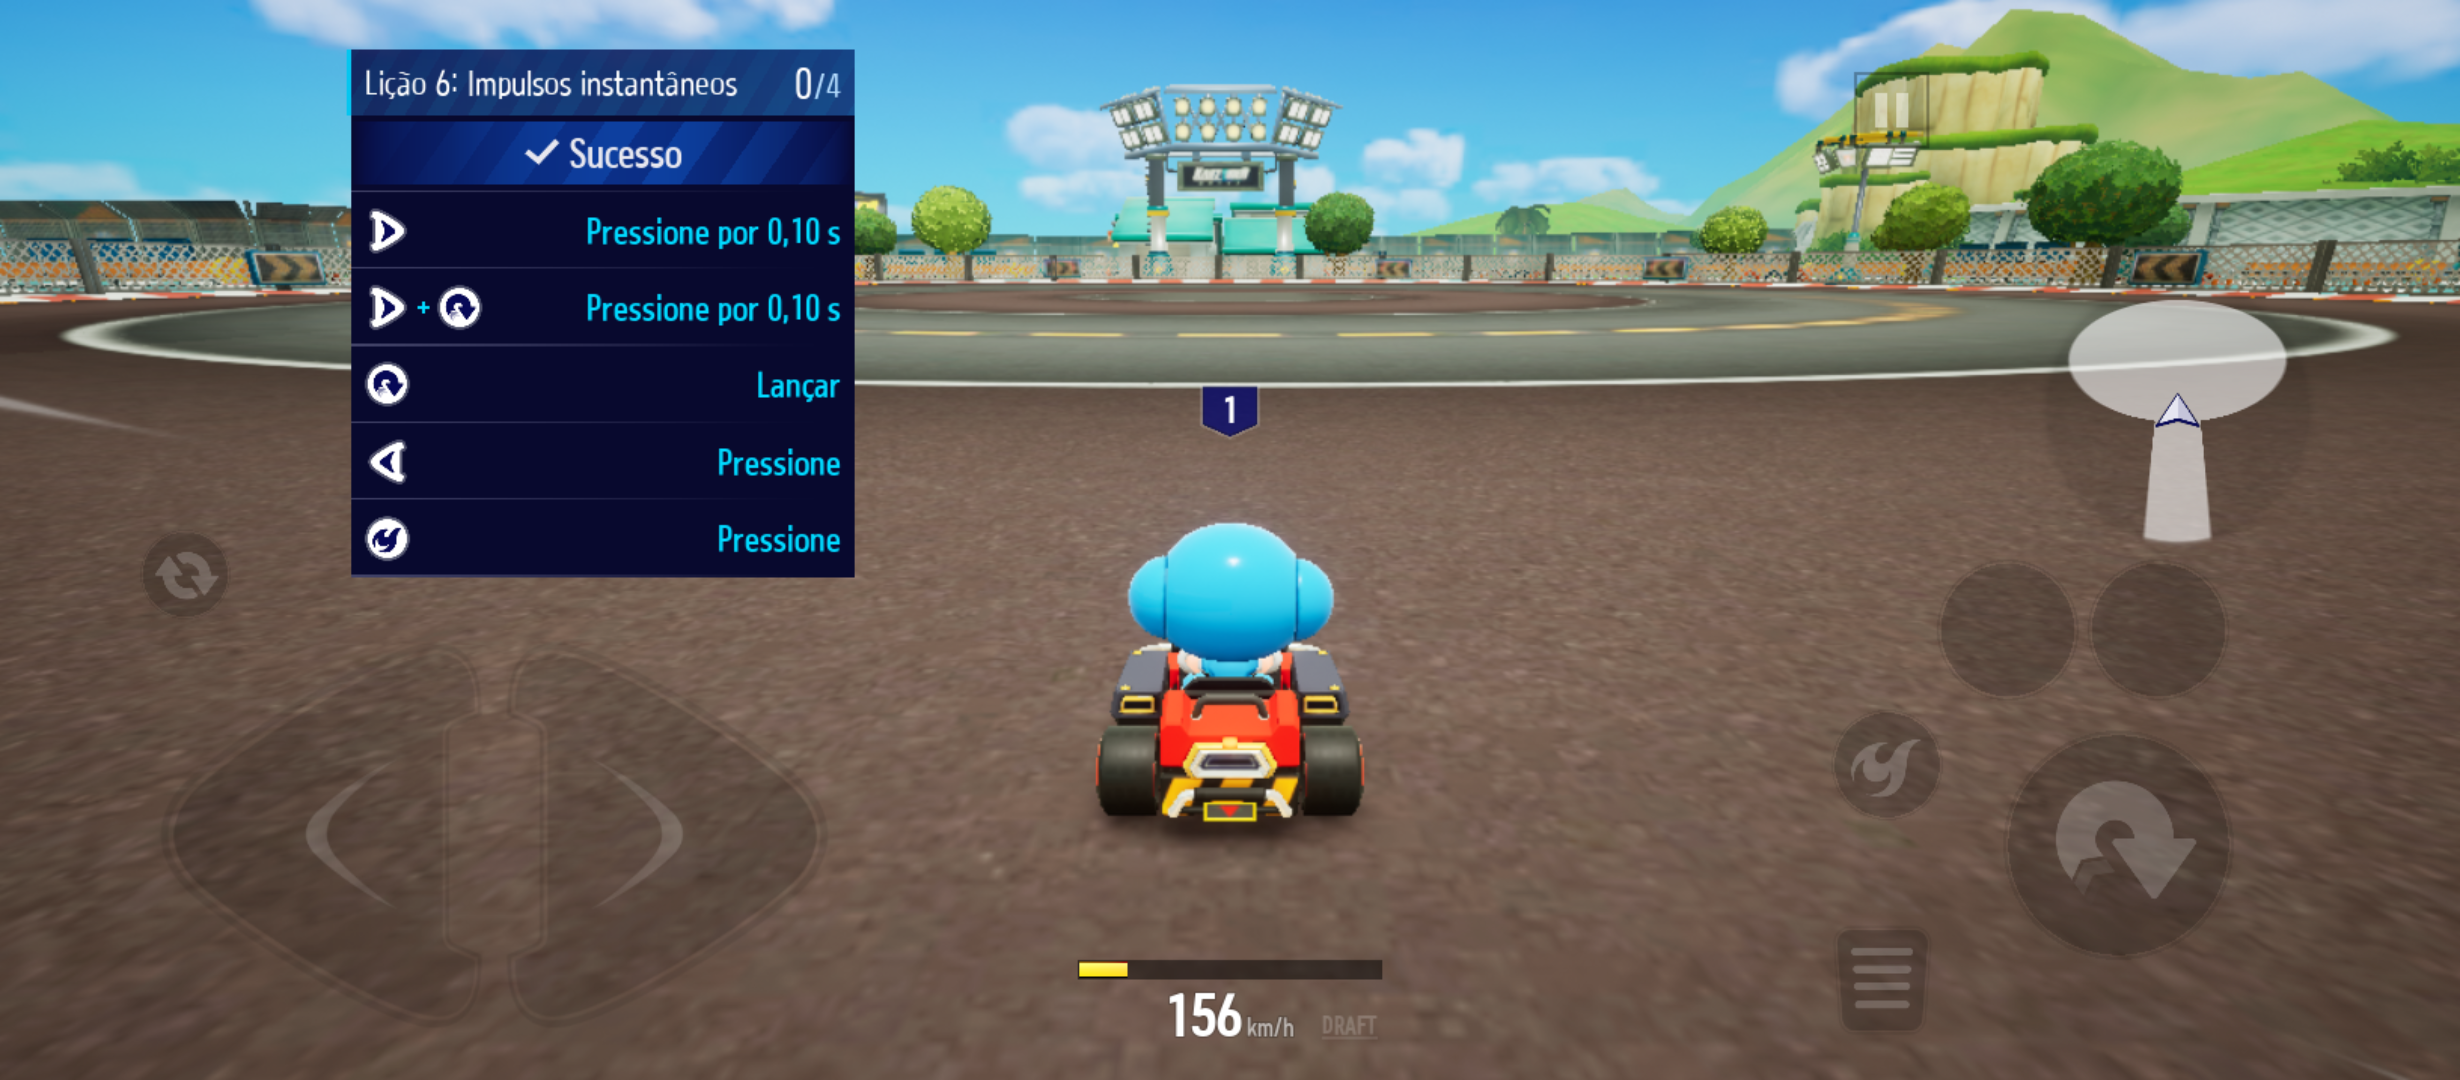 Análise: KartRider: Drift (Multi) une praticidade e desafio em um  interessante jogo de corrida - GameBlast